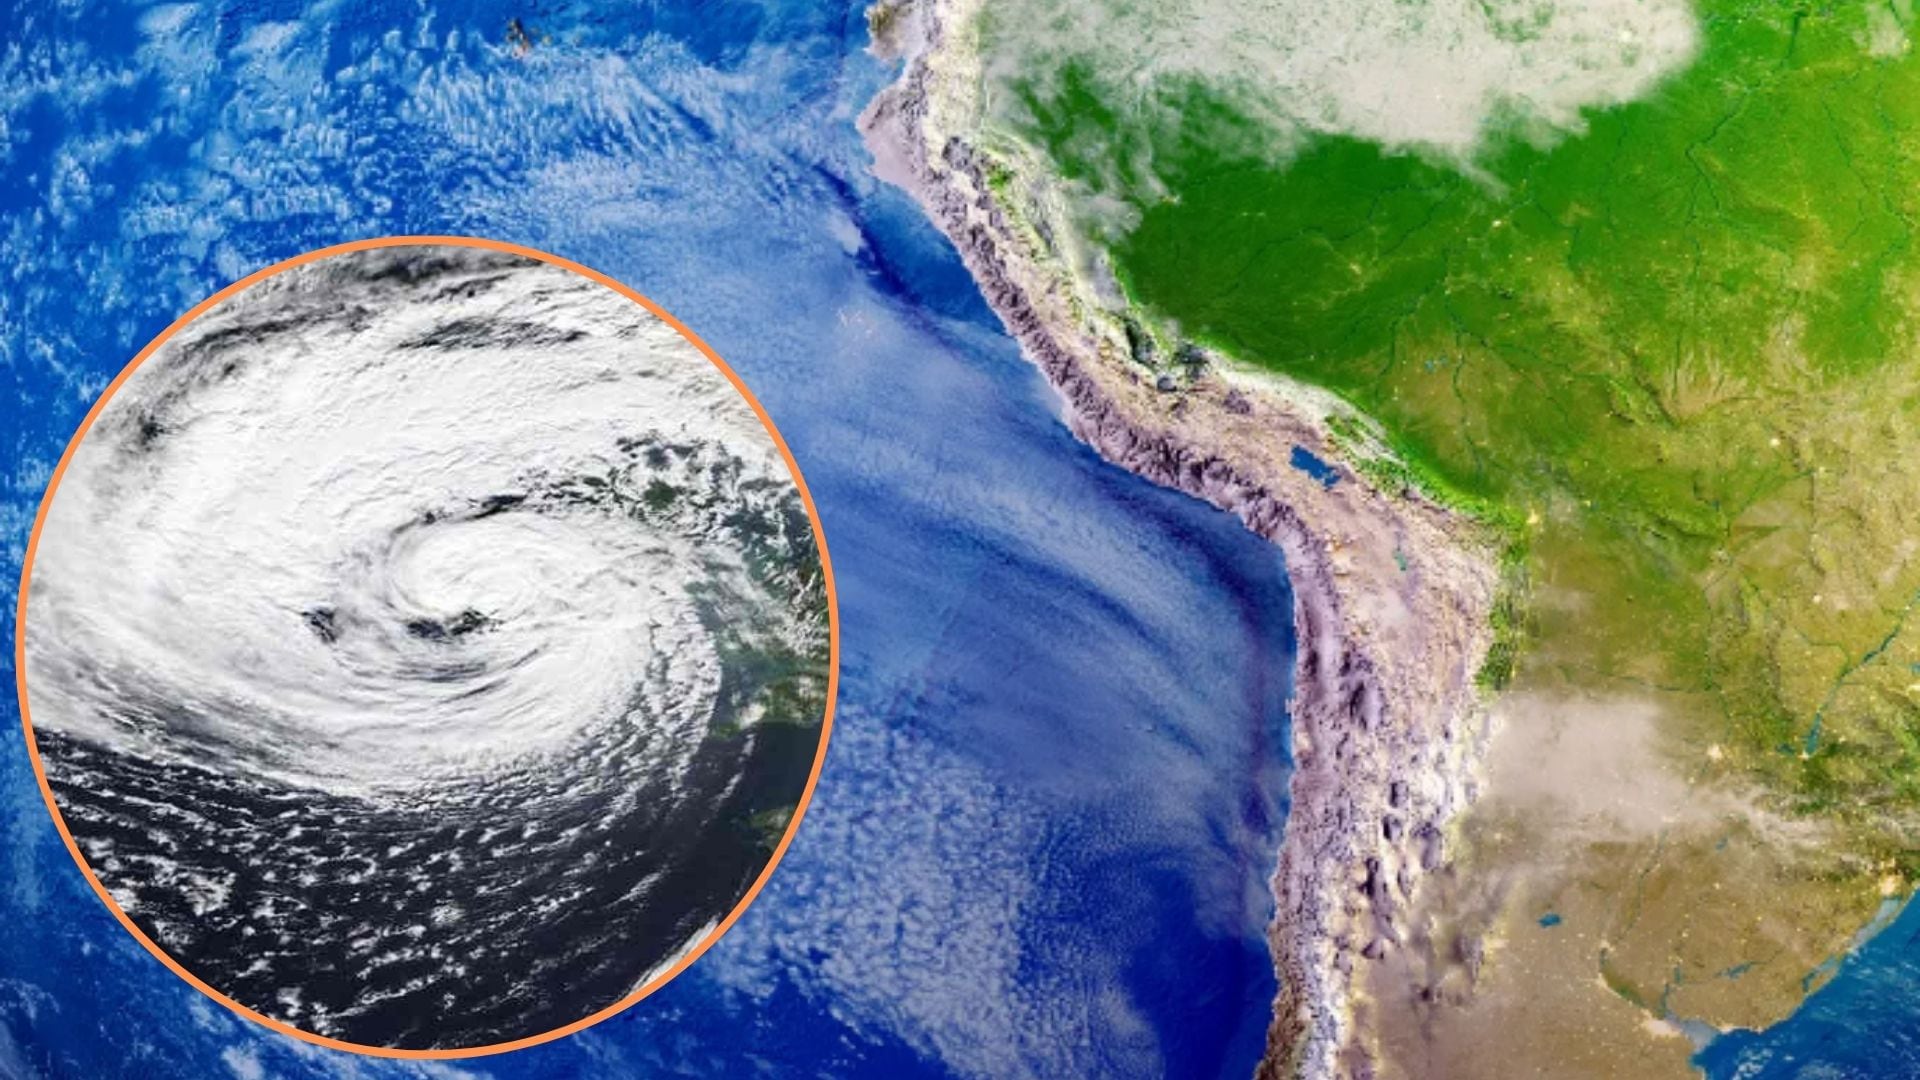 Meteorólogos del Senamhi proyectaron que el Anticiclón del Pacífico Sur se acerca al continente y favocerá a una sensación de frío en Lima, Callao y otras regiones cercanas al litoral.